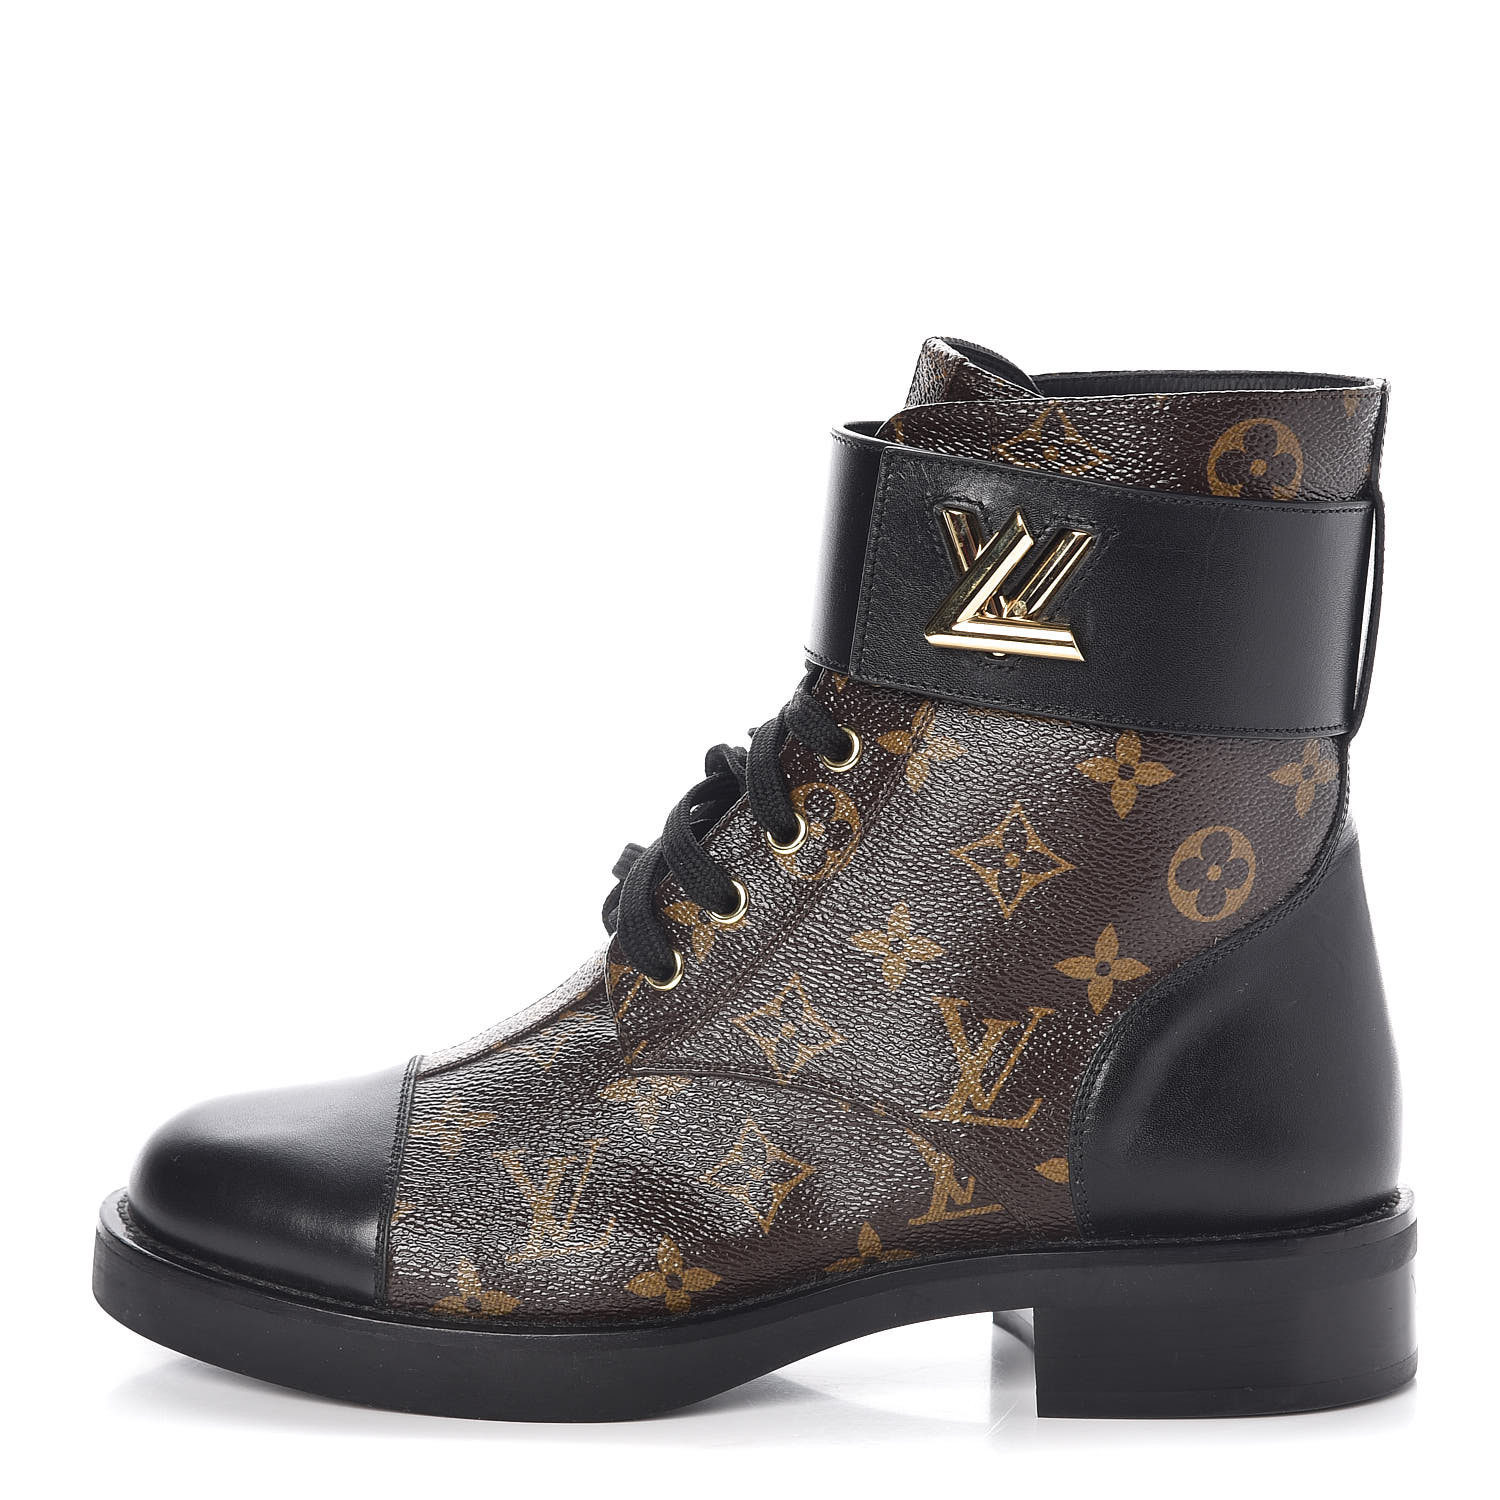 Wonderland Flat Ranger Boots - RE/WAY Louis Vuitton